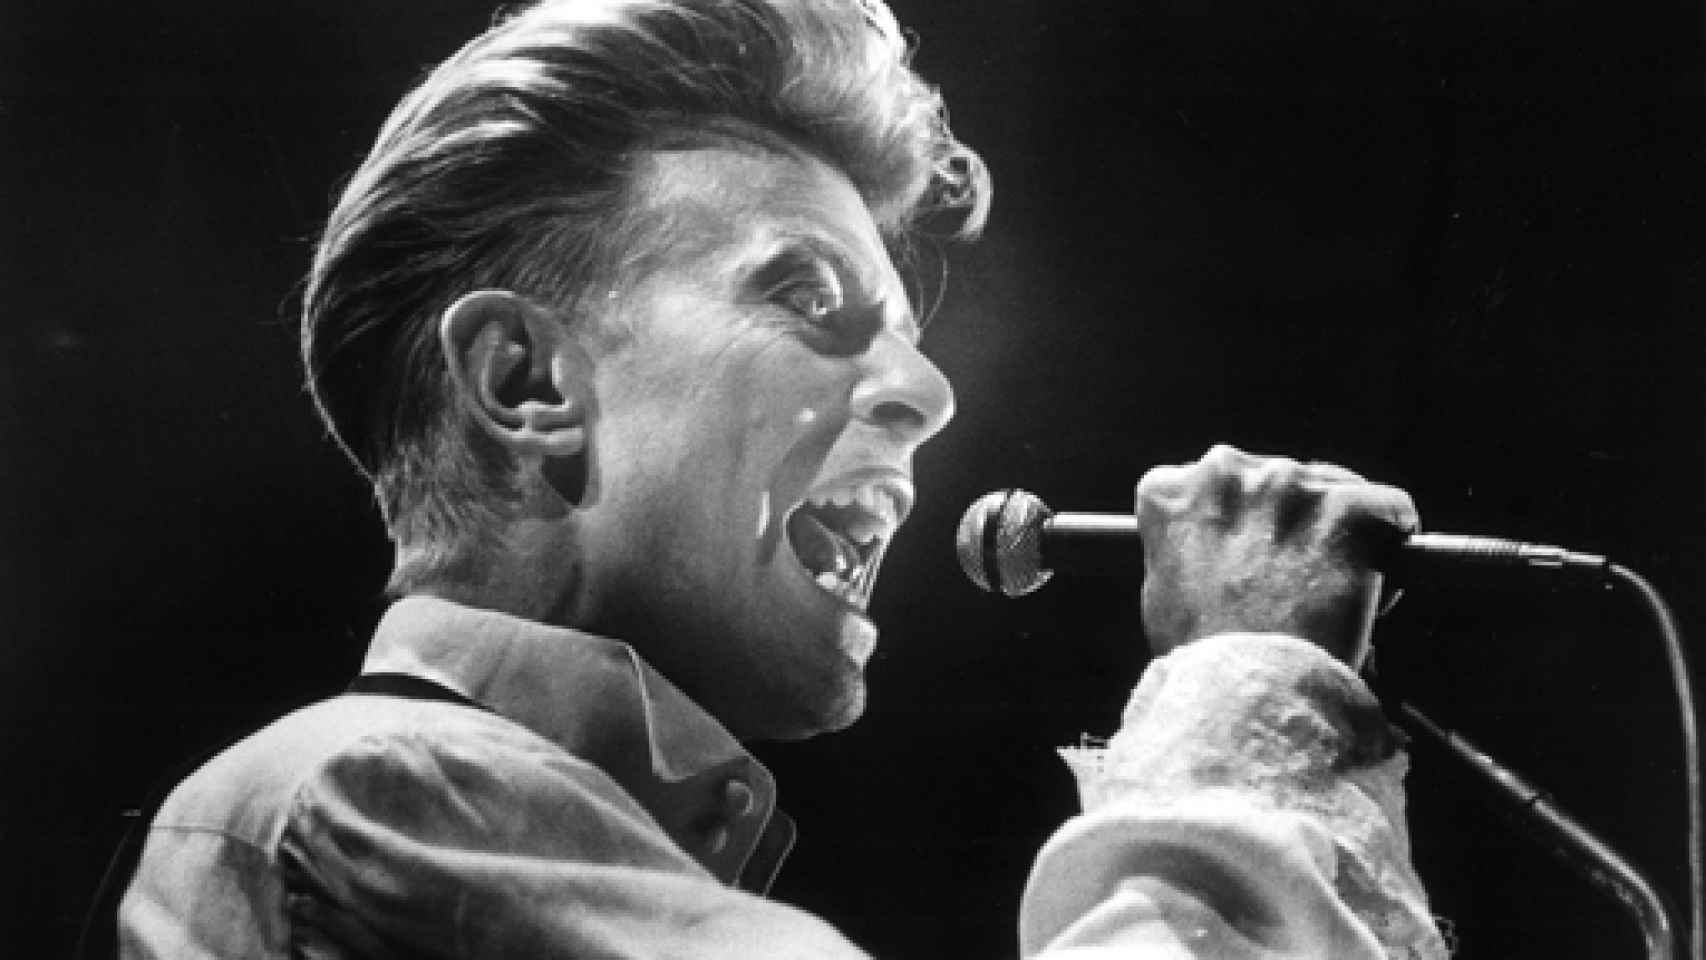 Image: David Bowie. De una estación a otra